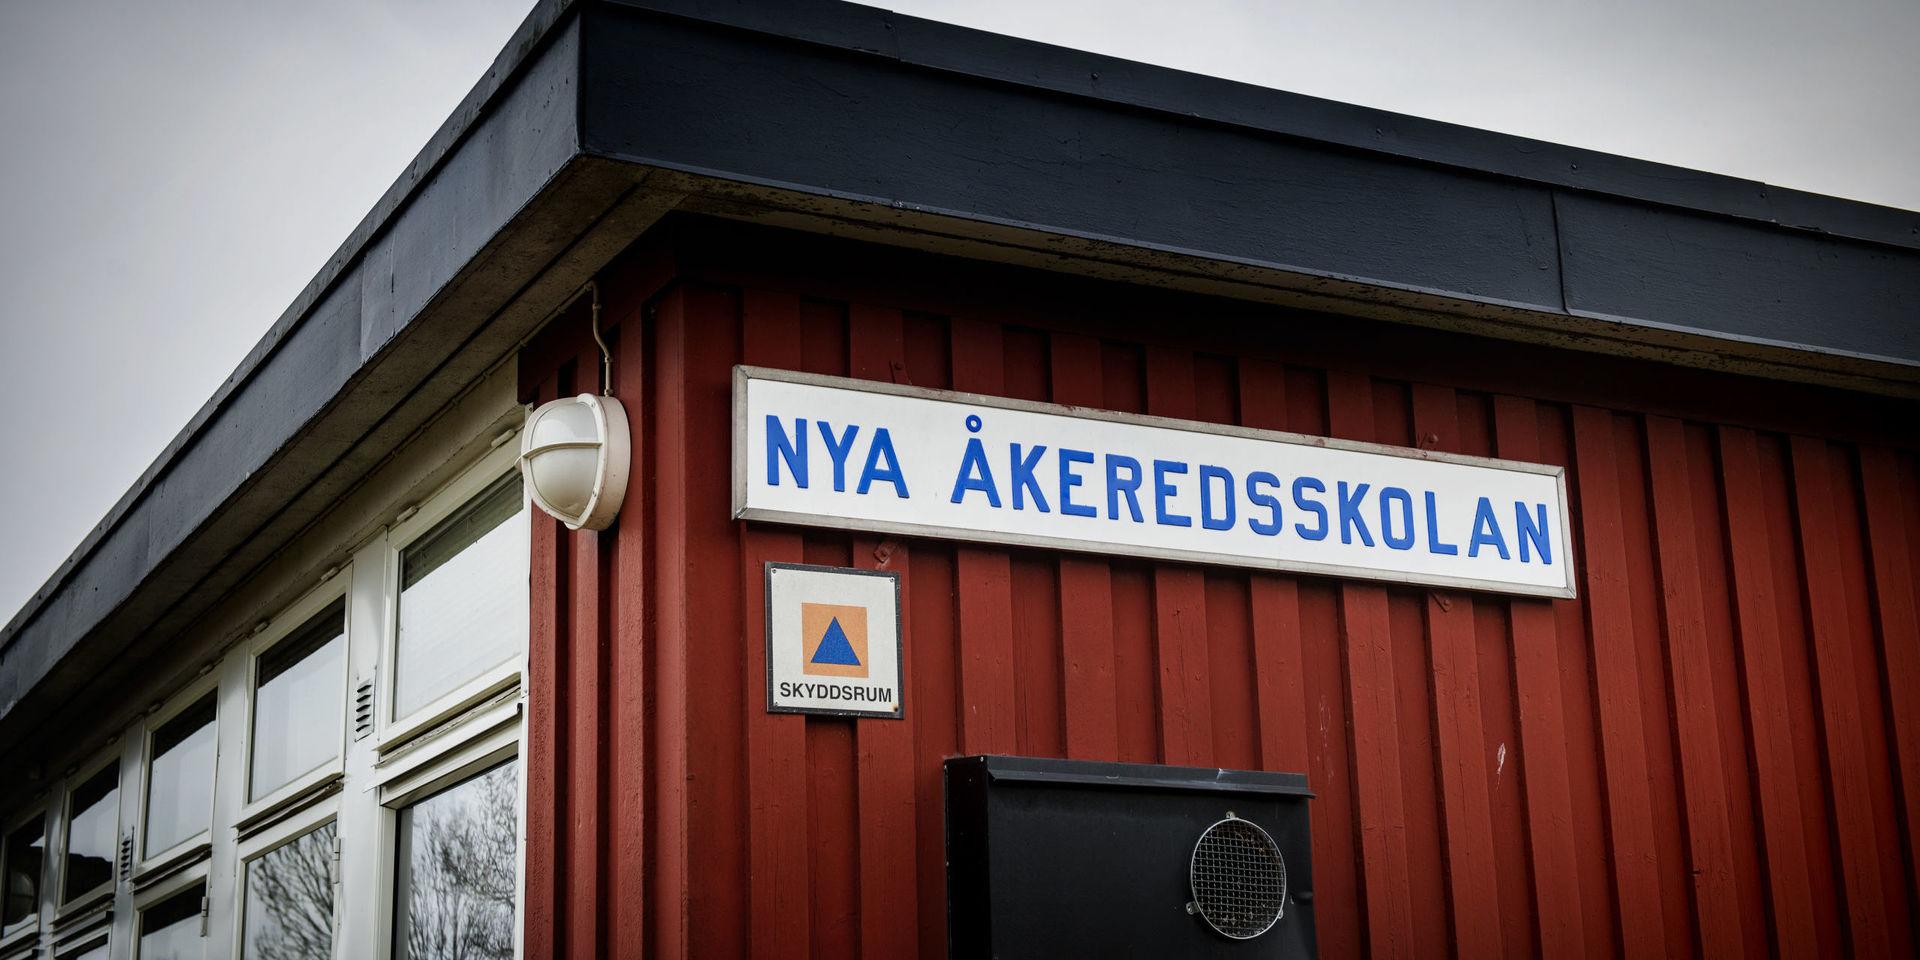 Nya Åkeredsskolan, som är namnet på fasadens skylt, bedömdes ha blivit allt för gammal och eftersatt. Nu är det klart var eleverna och personalen ska vara resten av vårterminen.